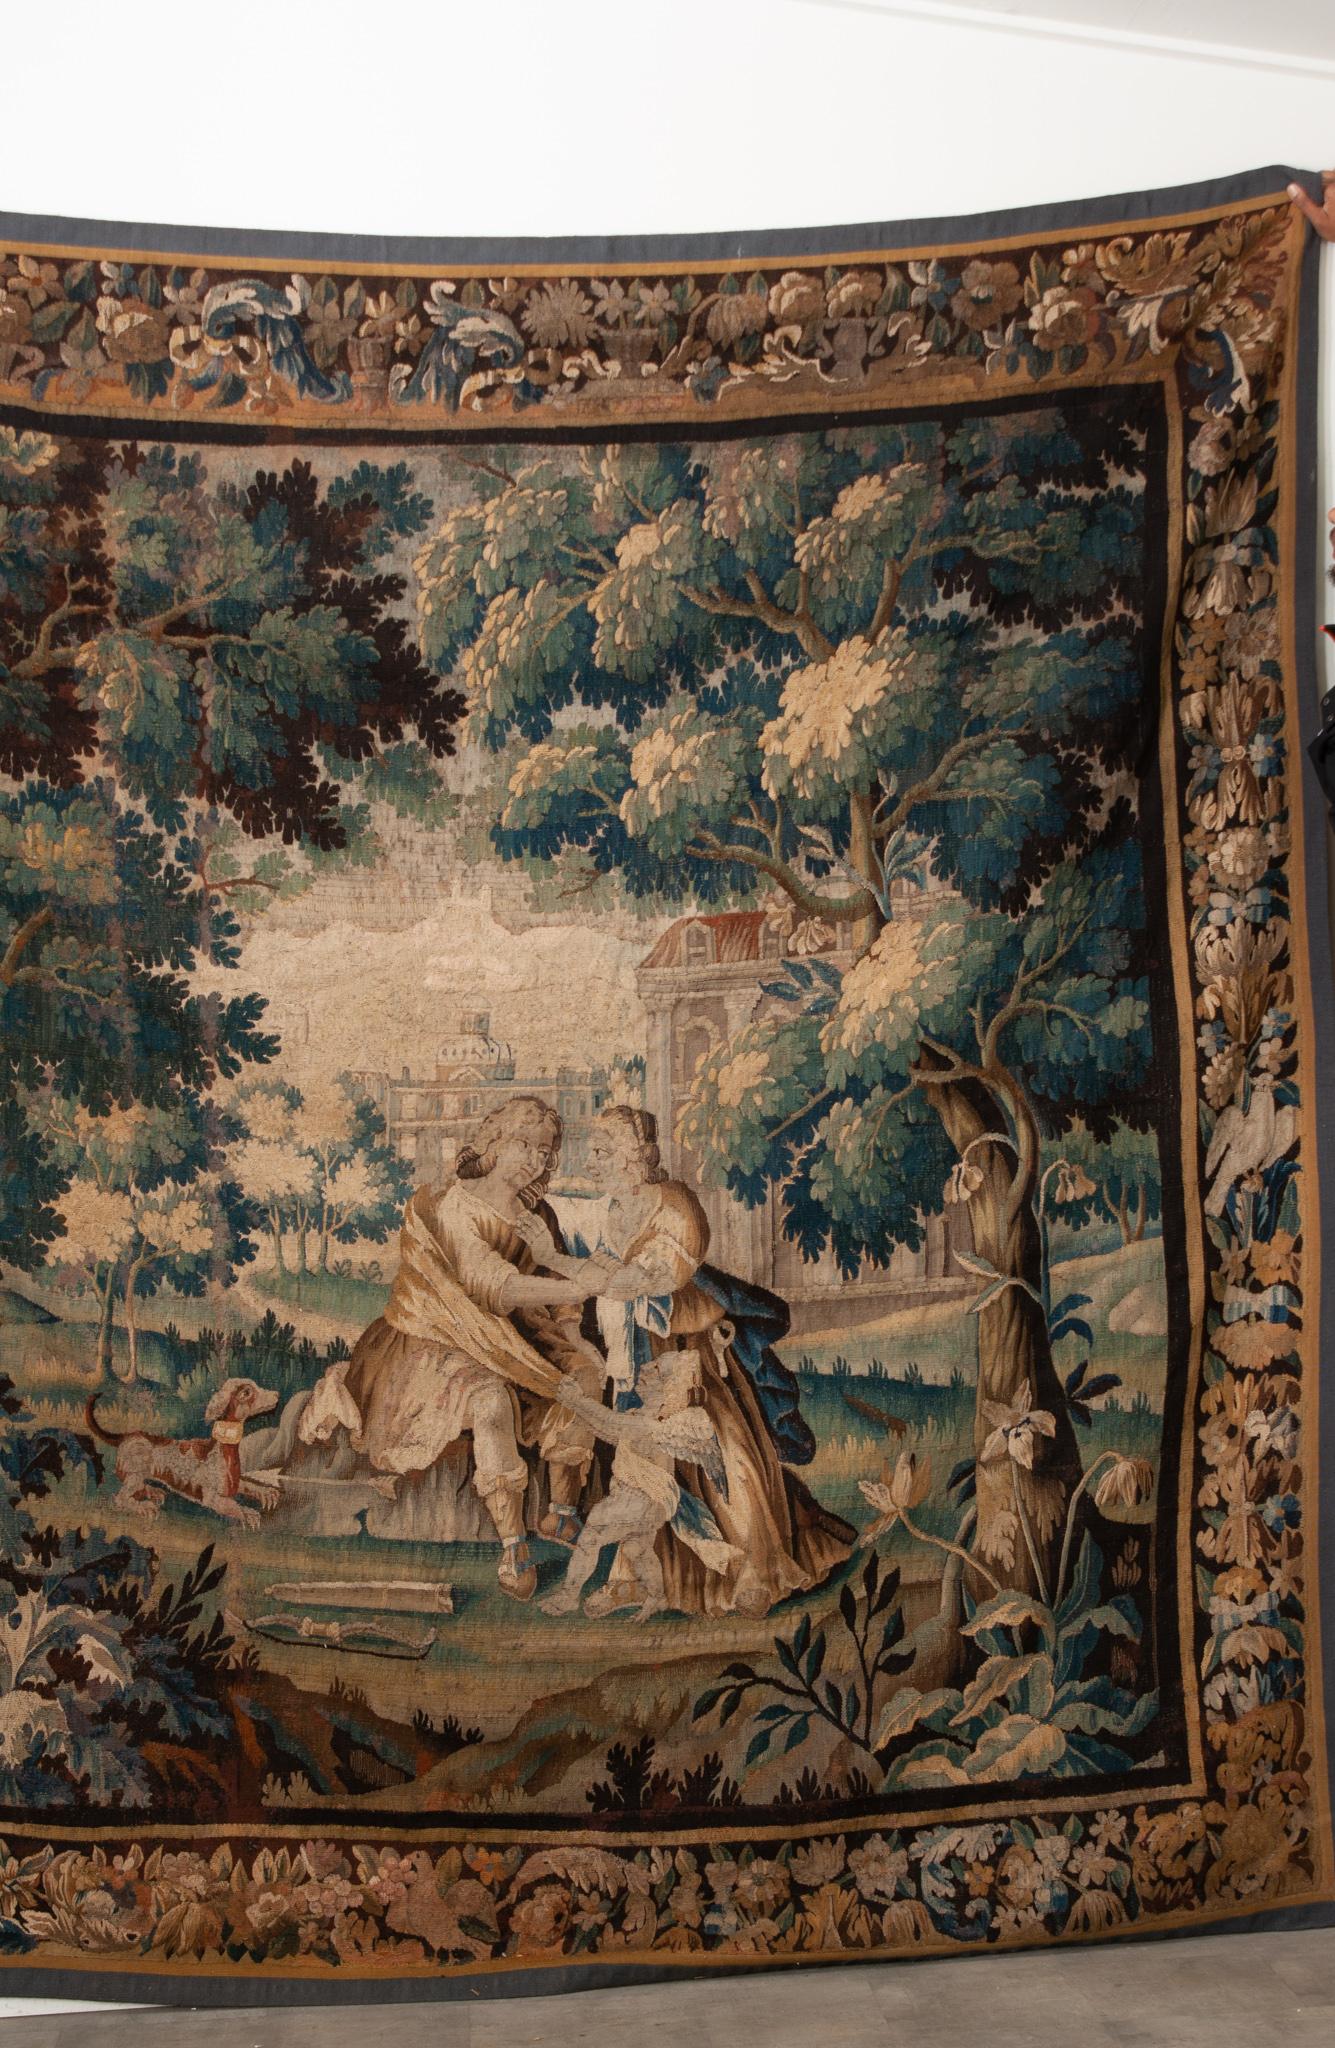 Ein Audubon-Wandteppich aus dem 16. Jahrhundert oder früher ist lebendig und in wunderbarem antiken Zustand. Die ursprüngliche Bordüre ist vollständig erhalten und mit Blumen, Laub und Vögeln gestaltet. Wandteppiche wurden erstmals im Mittelalter